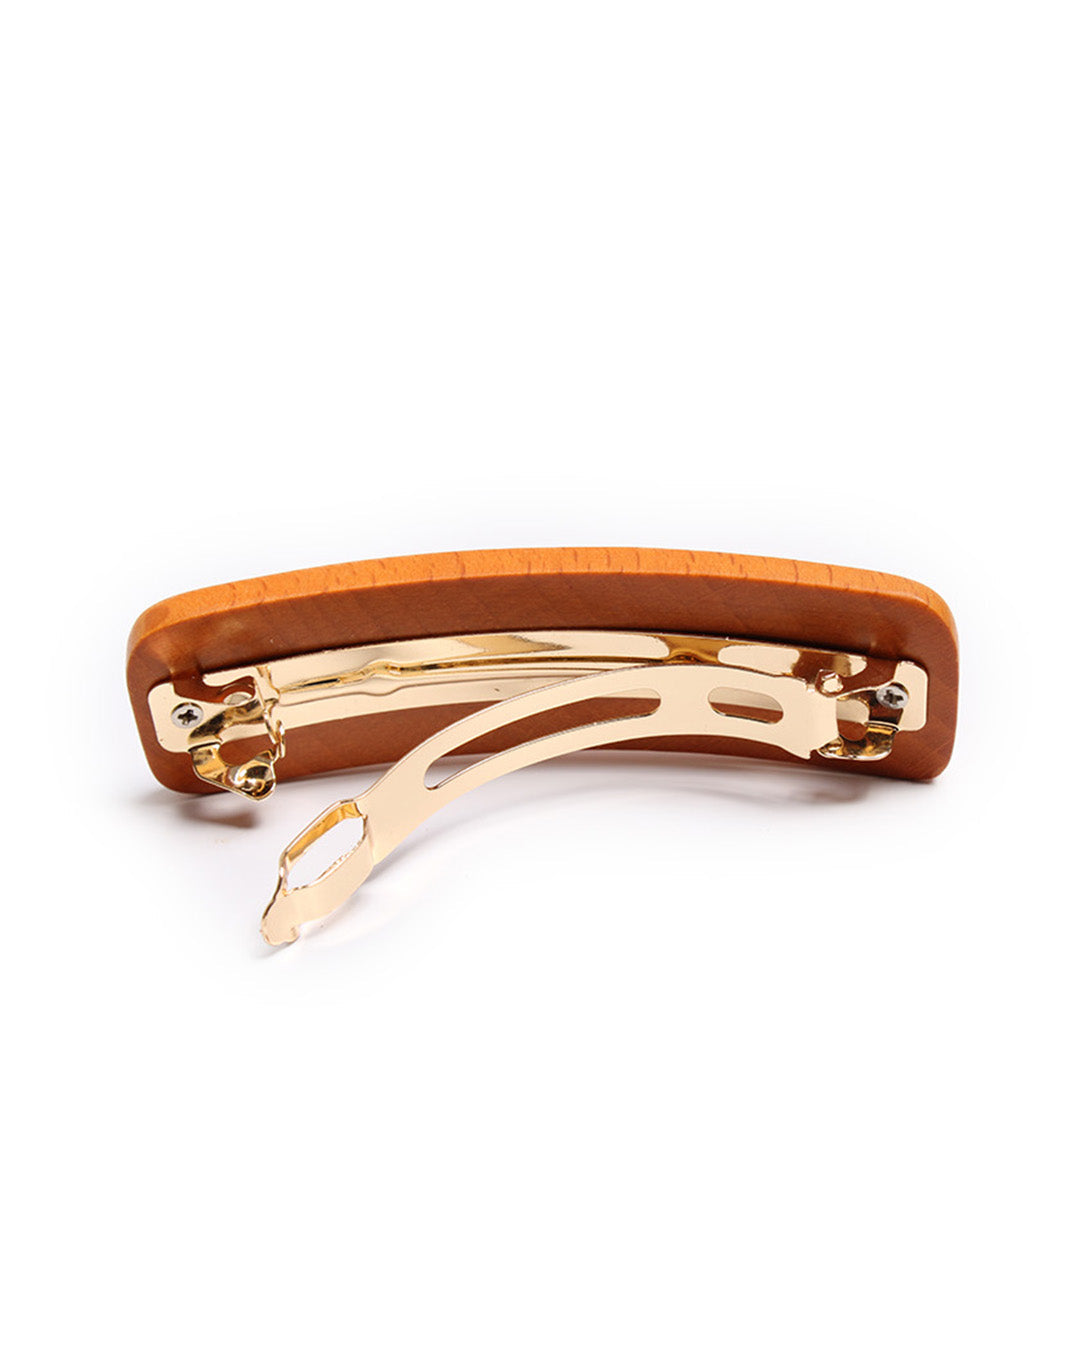 back side of brown wooden barrette showing gold clip.